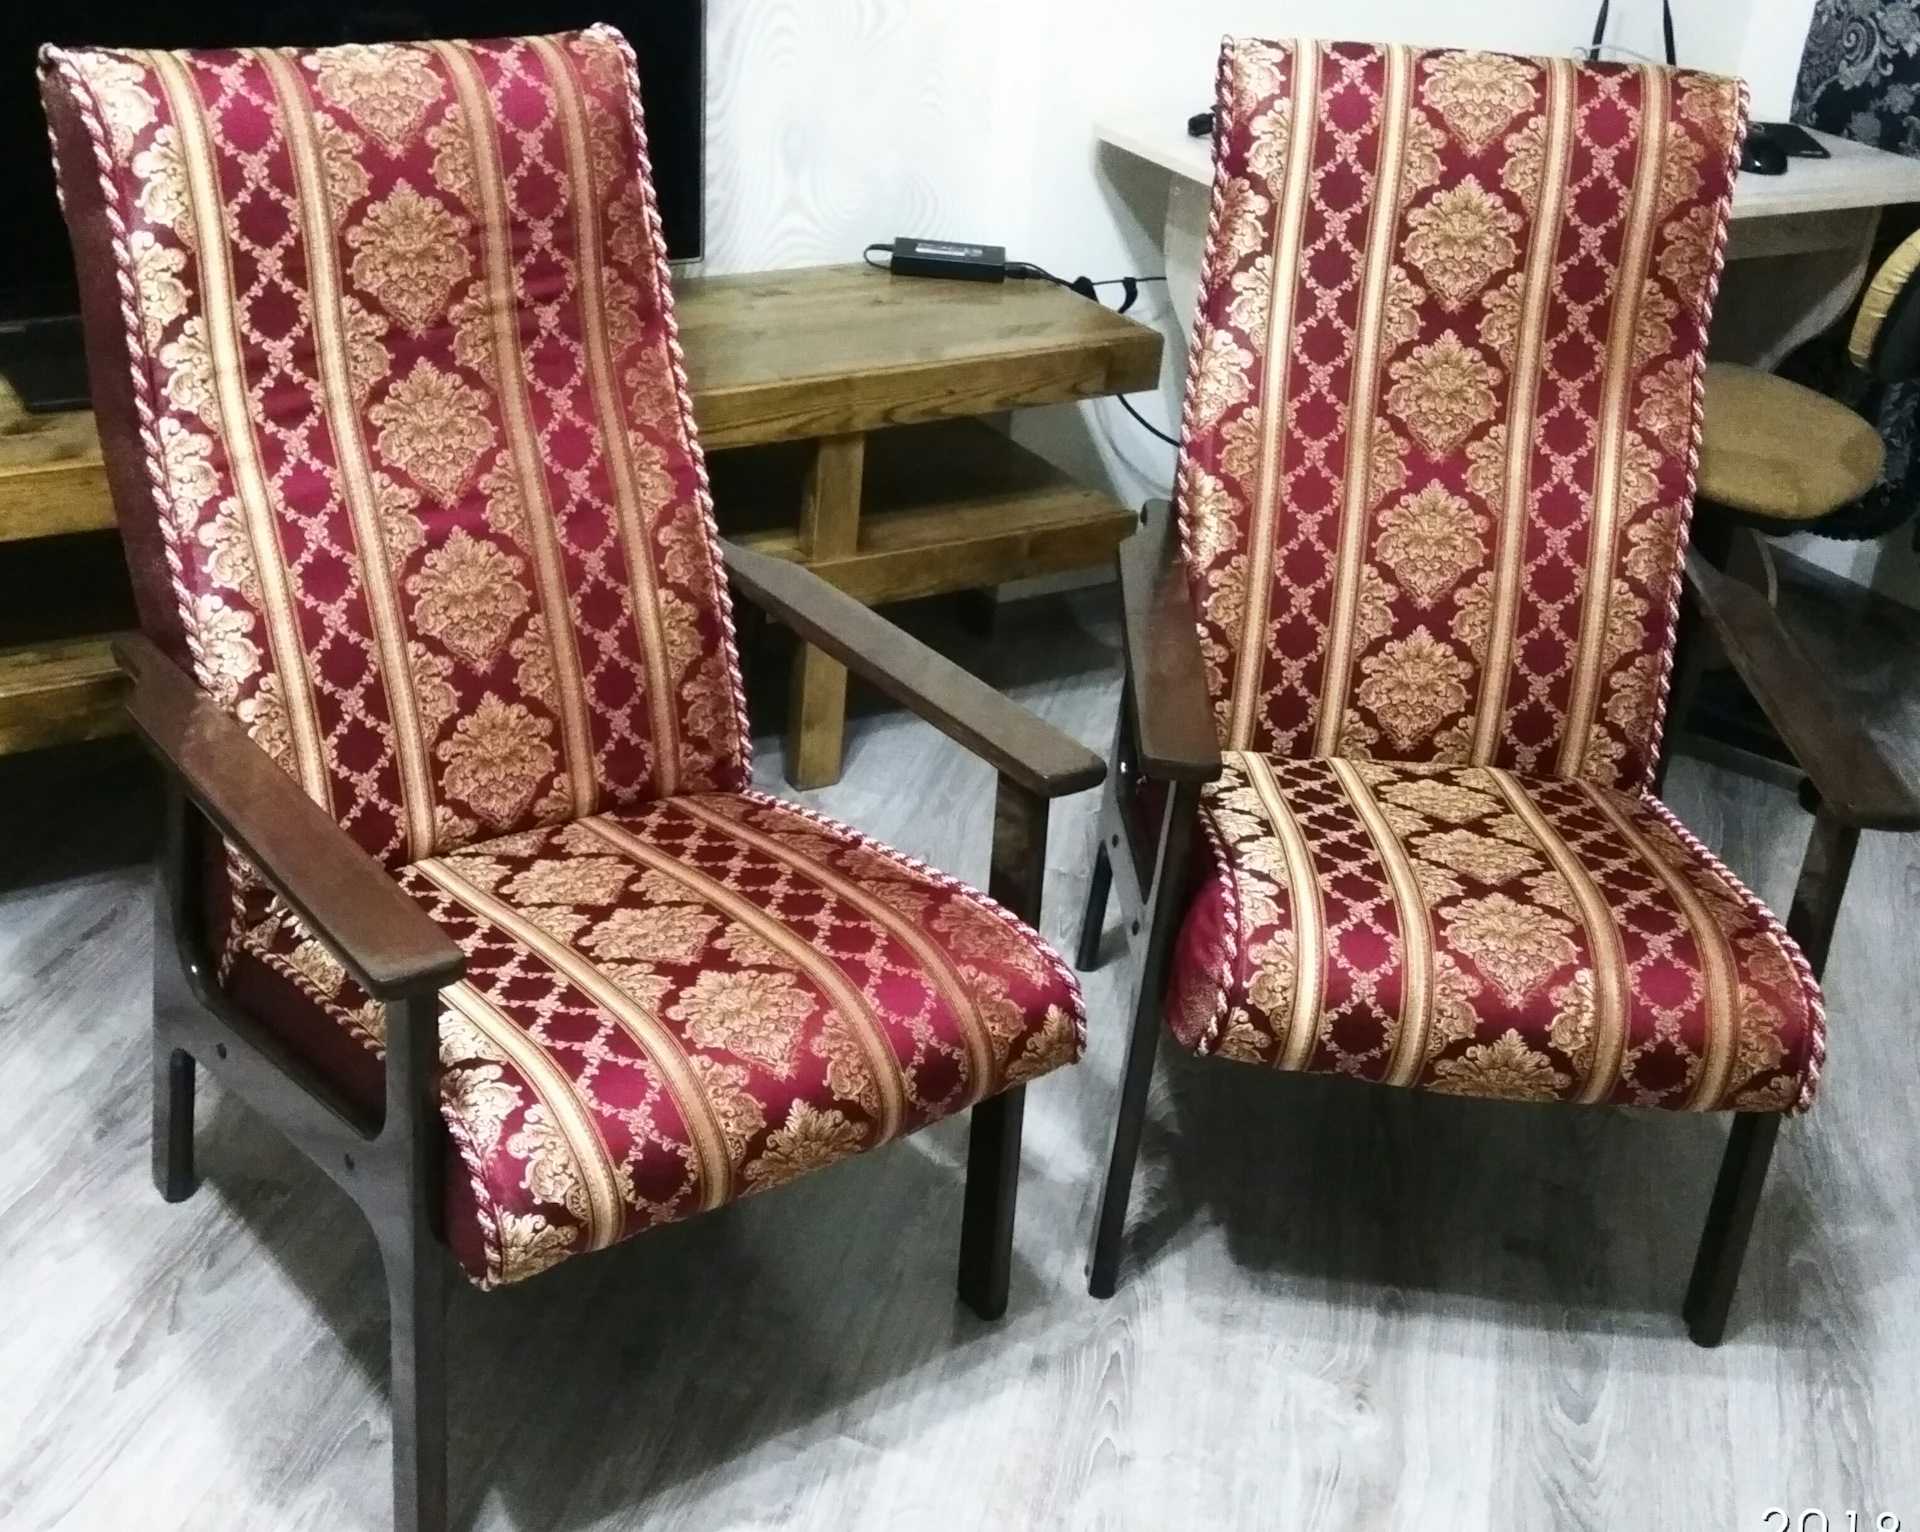 Реставрируем старое кресло